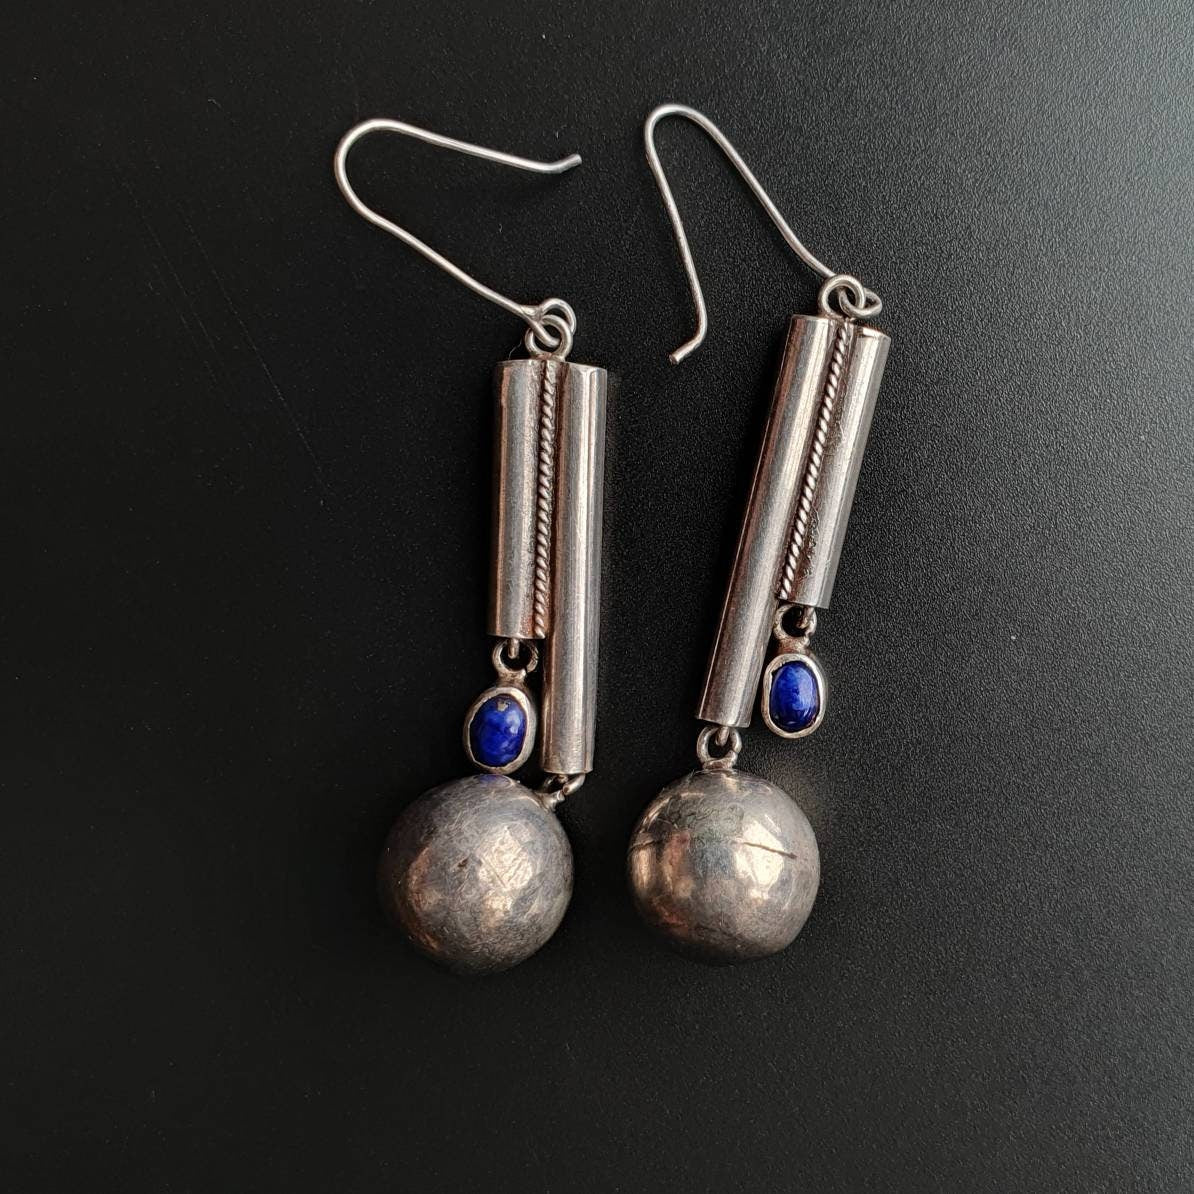 Vintage earrings,retro earrings, jewellery, handmade, sterling silver, gifts, unisex,lapis lazuli gemstone, dangle earrings.art deco, unique